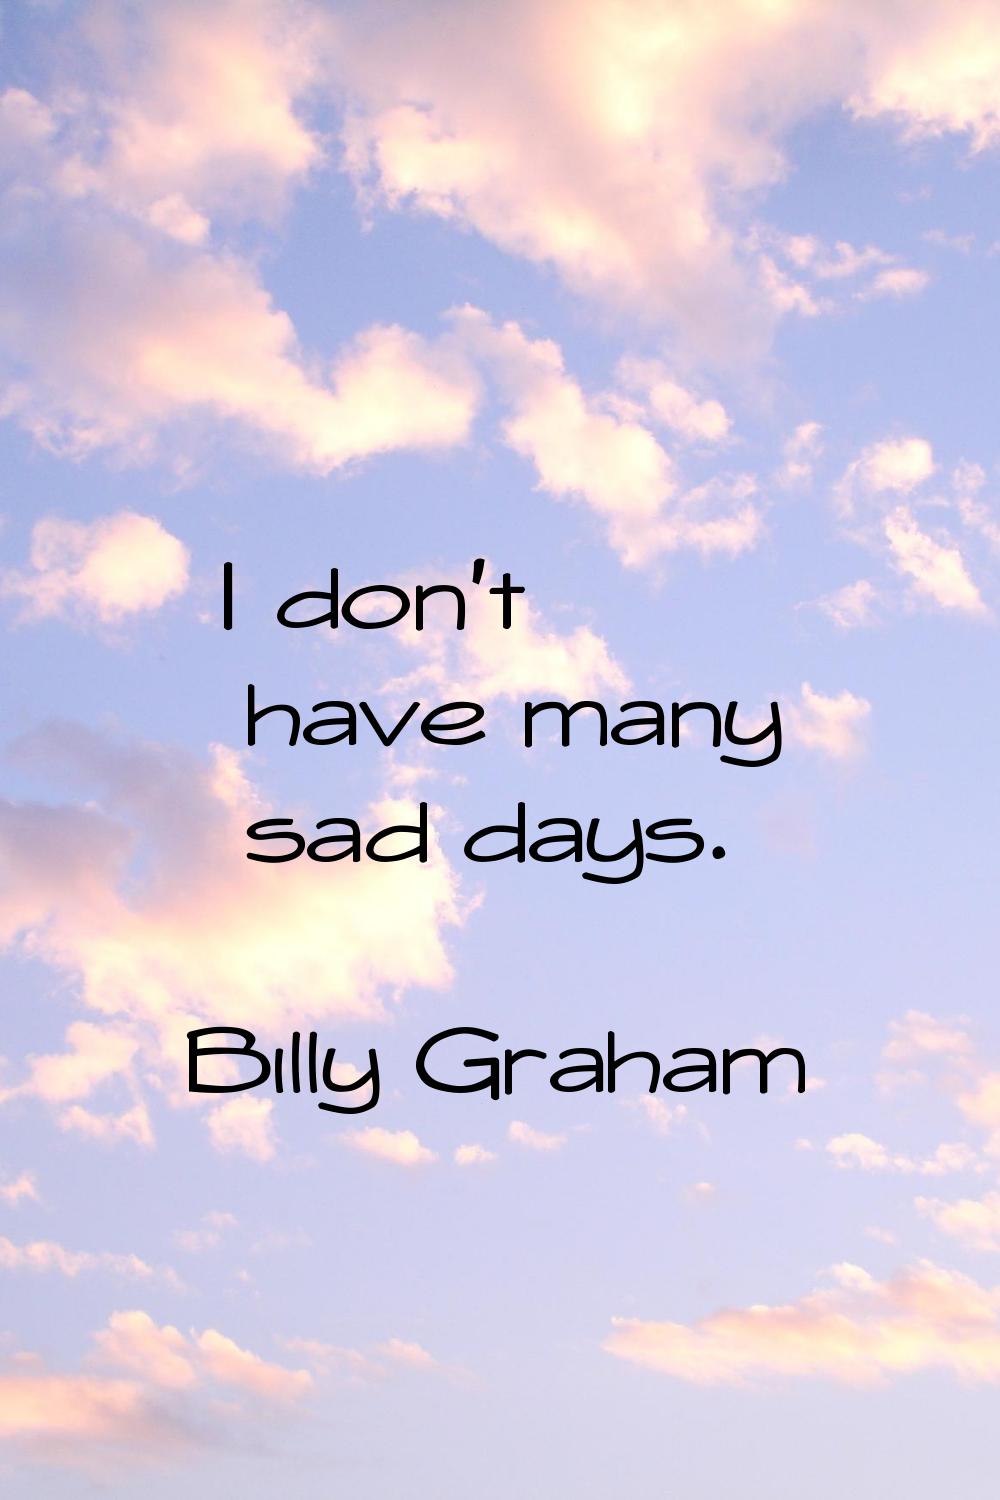 I don't have many sad days.